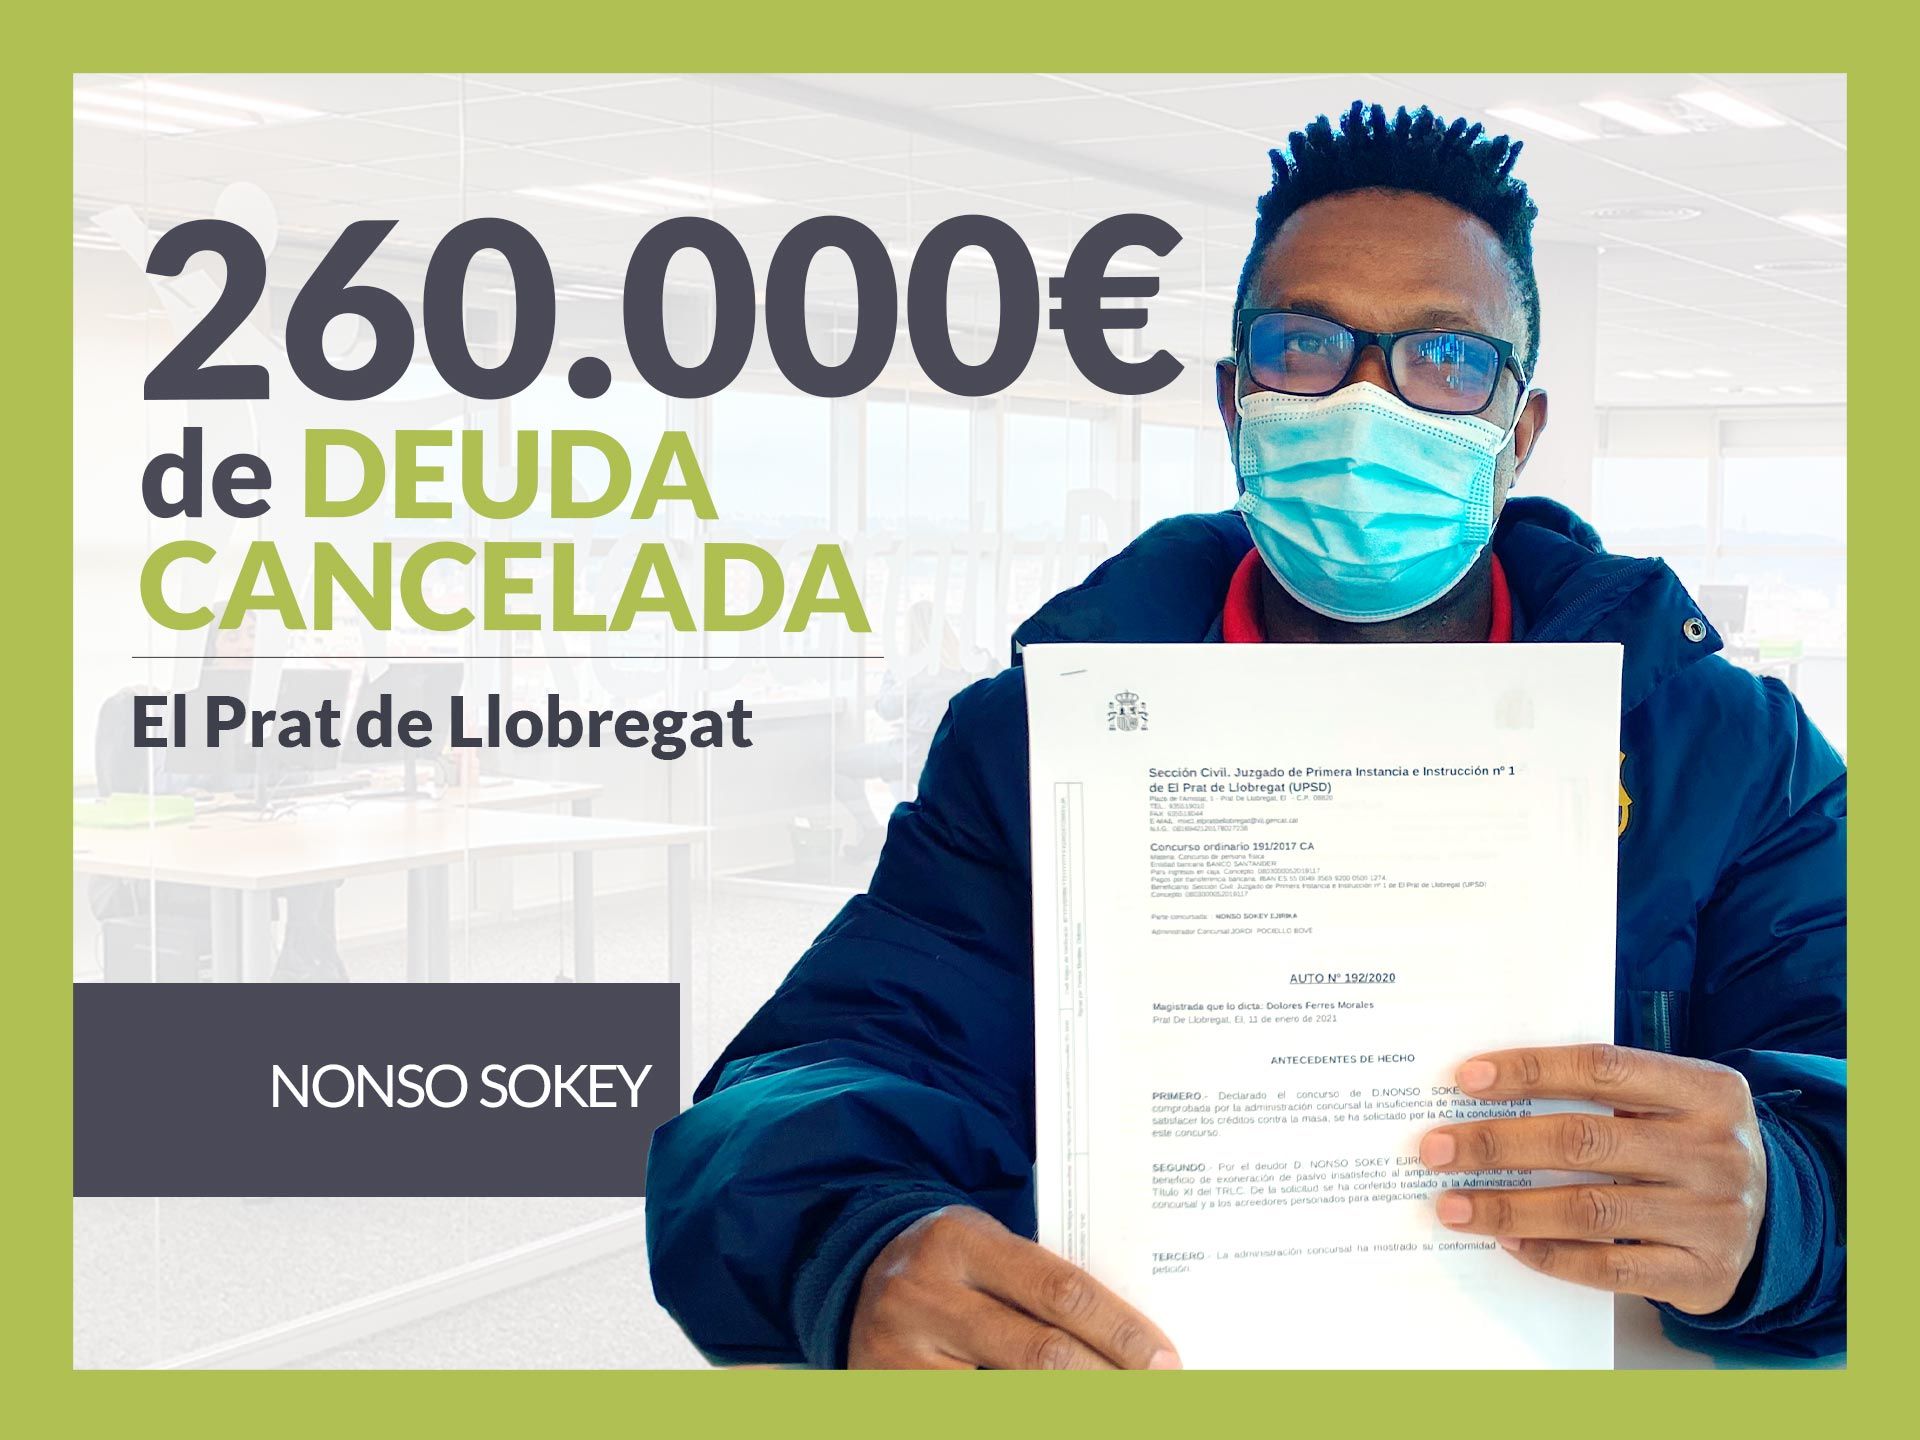 Repara tu Deuda cancela 260.000? en El Prat de Llobregat (Barcelona) con la Ley de Segunda Oportunidad